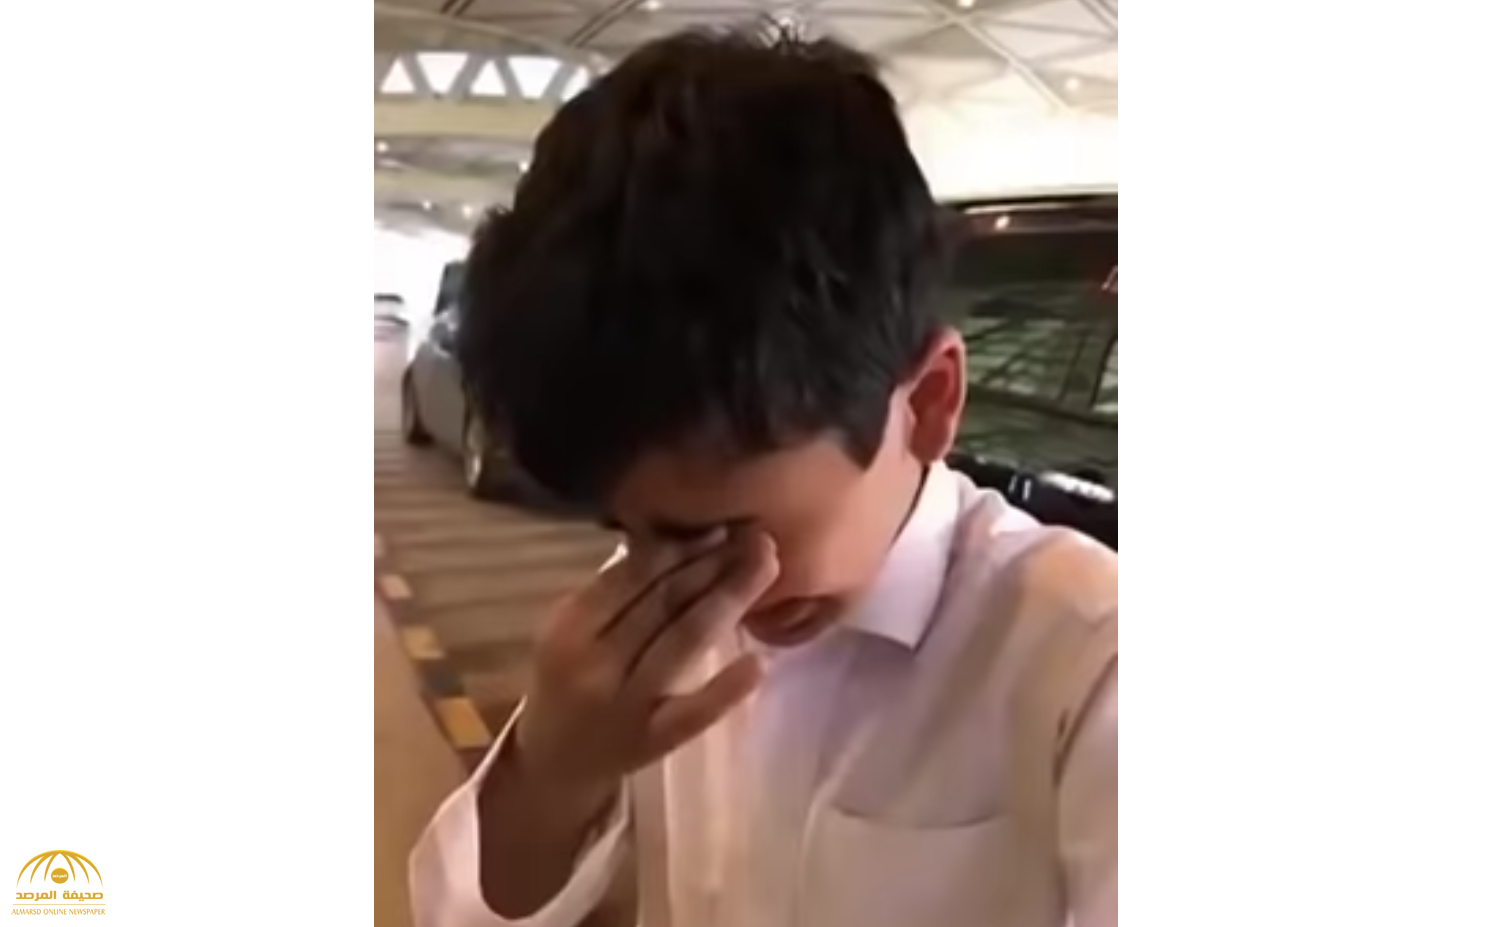 شاهد.. طفل سعودي يودع والده في المطار بالدموع يثير تفاعلا على تويتر